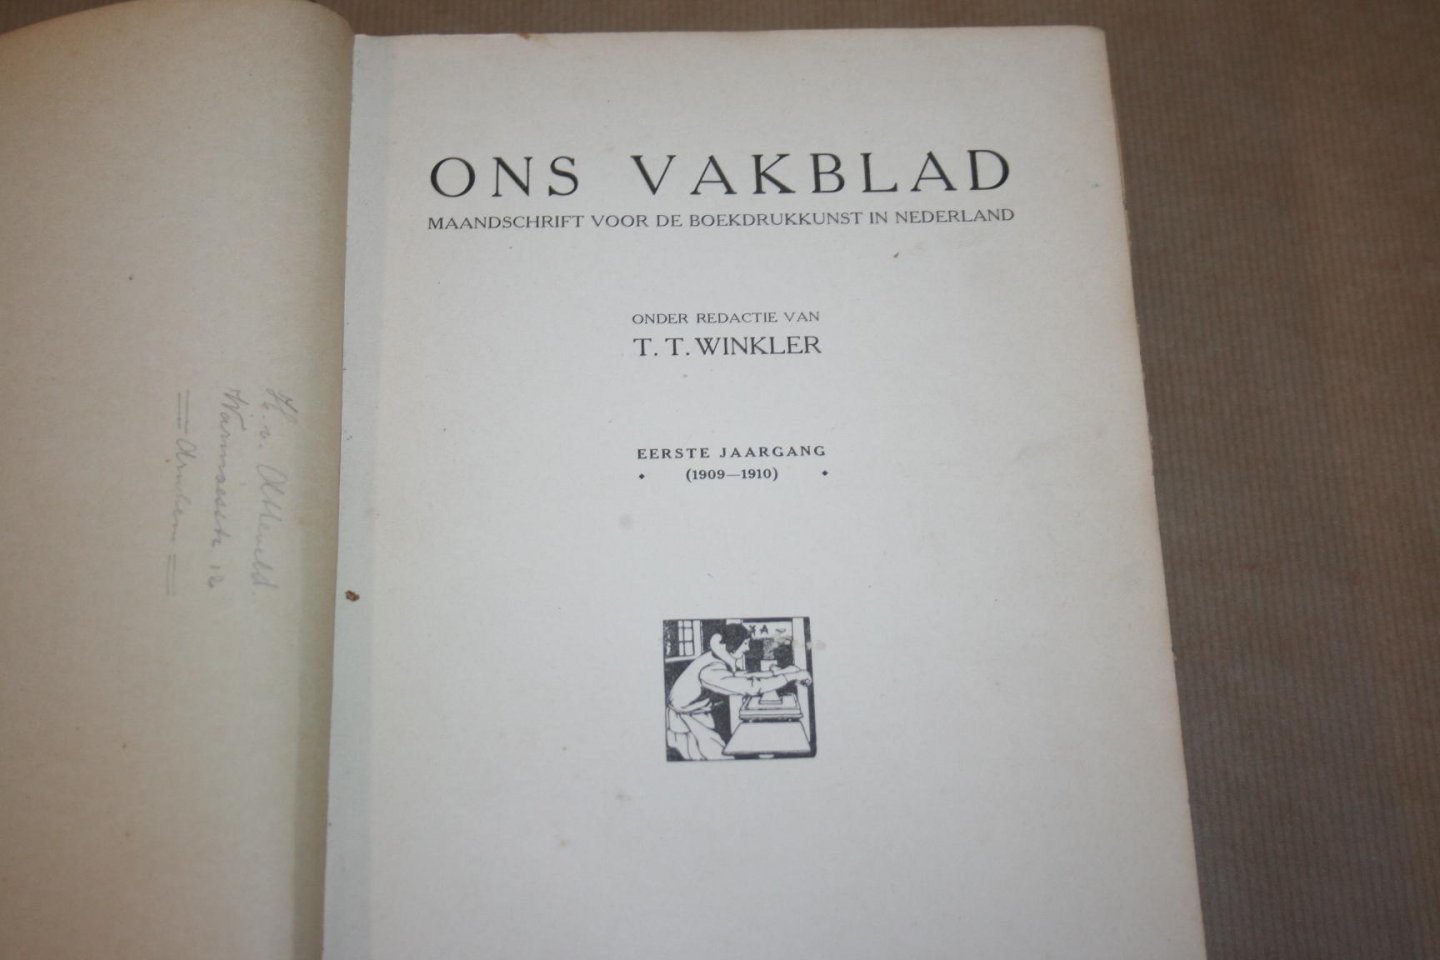  - Ons Vakblad Maandschrift voor de Boekdrukkunst in Nederland -- Eerste jaargang 1909-1910